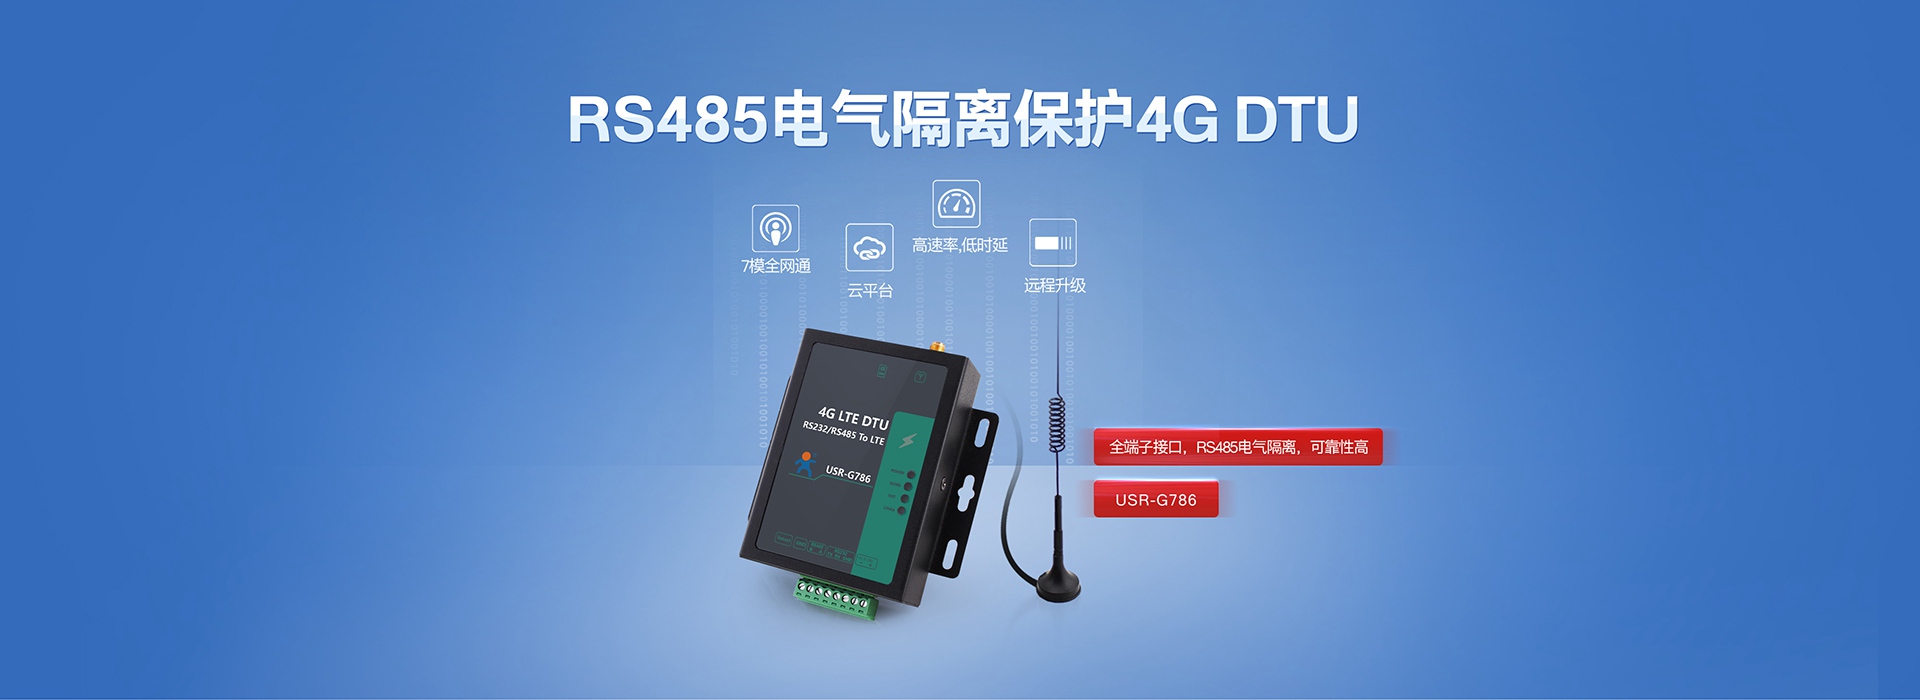 全网通4G LTE DTU联网终端|RS485电气隔离保护4G DTU